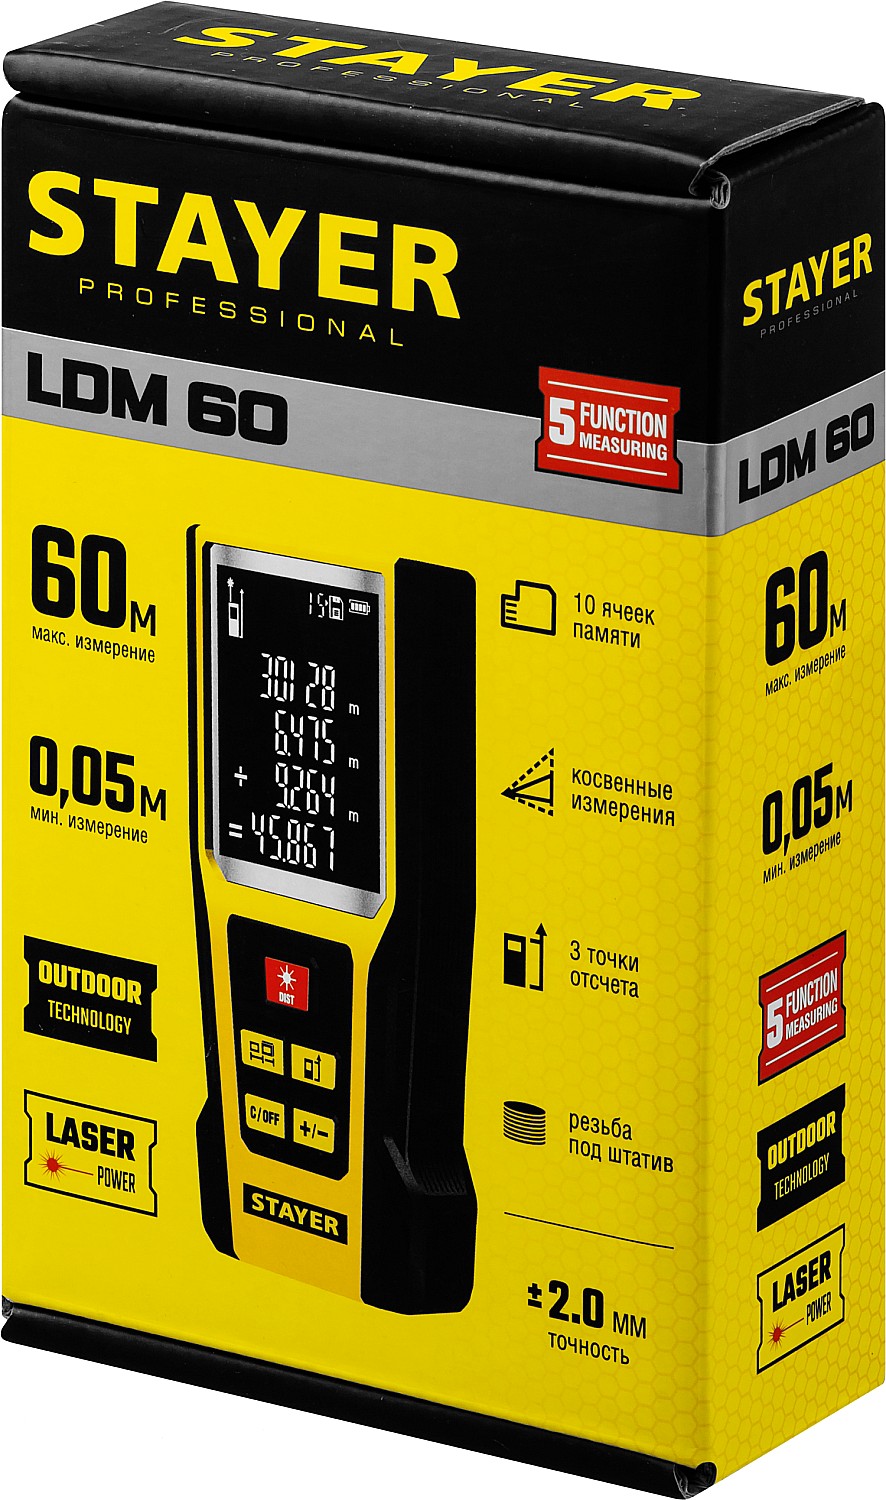 34957_z01 Дальномер лазерный, ''LDM-60 '', дальность 60 м, 5 функций, STAYER Professional